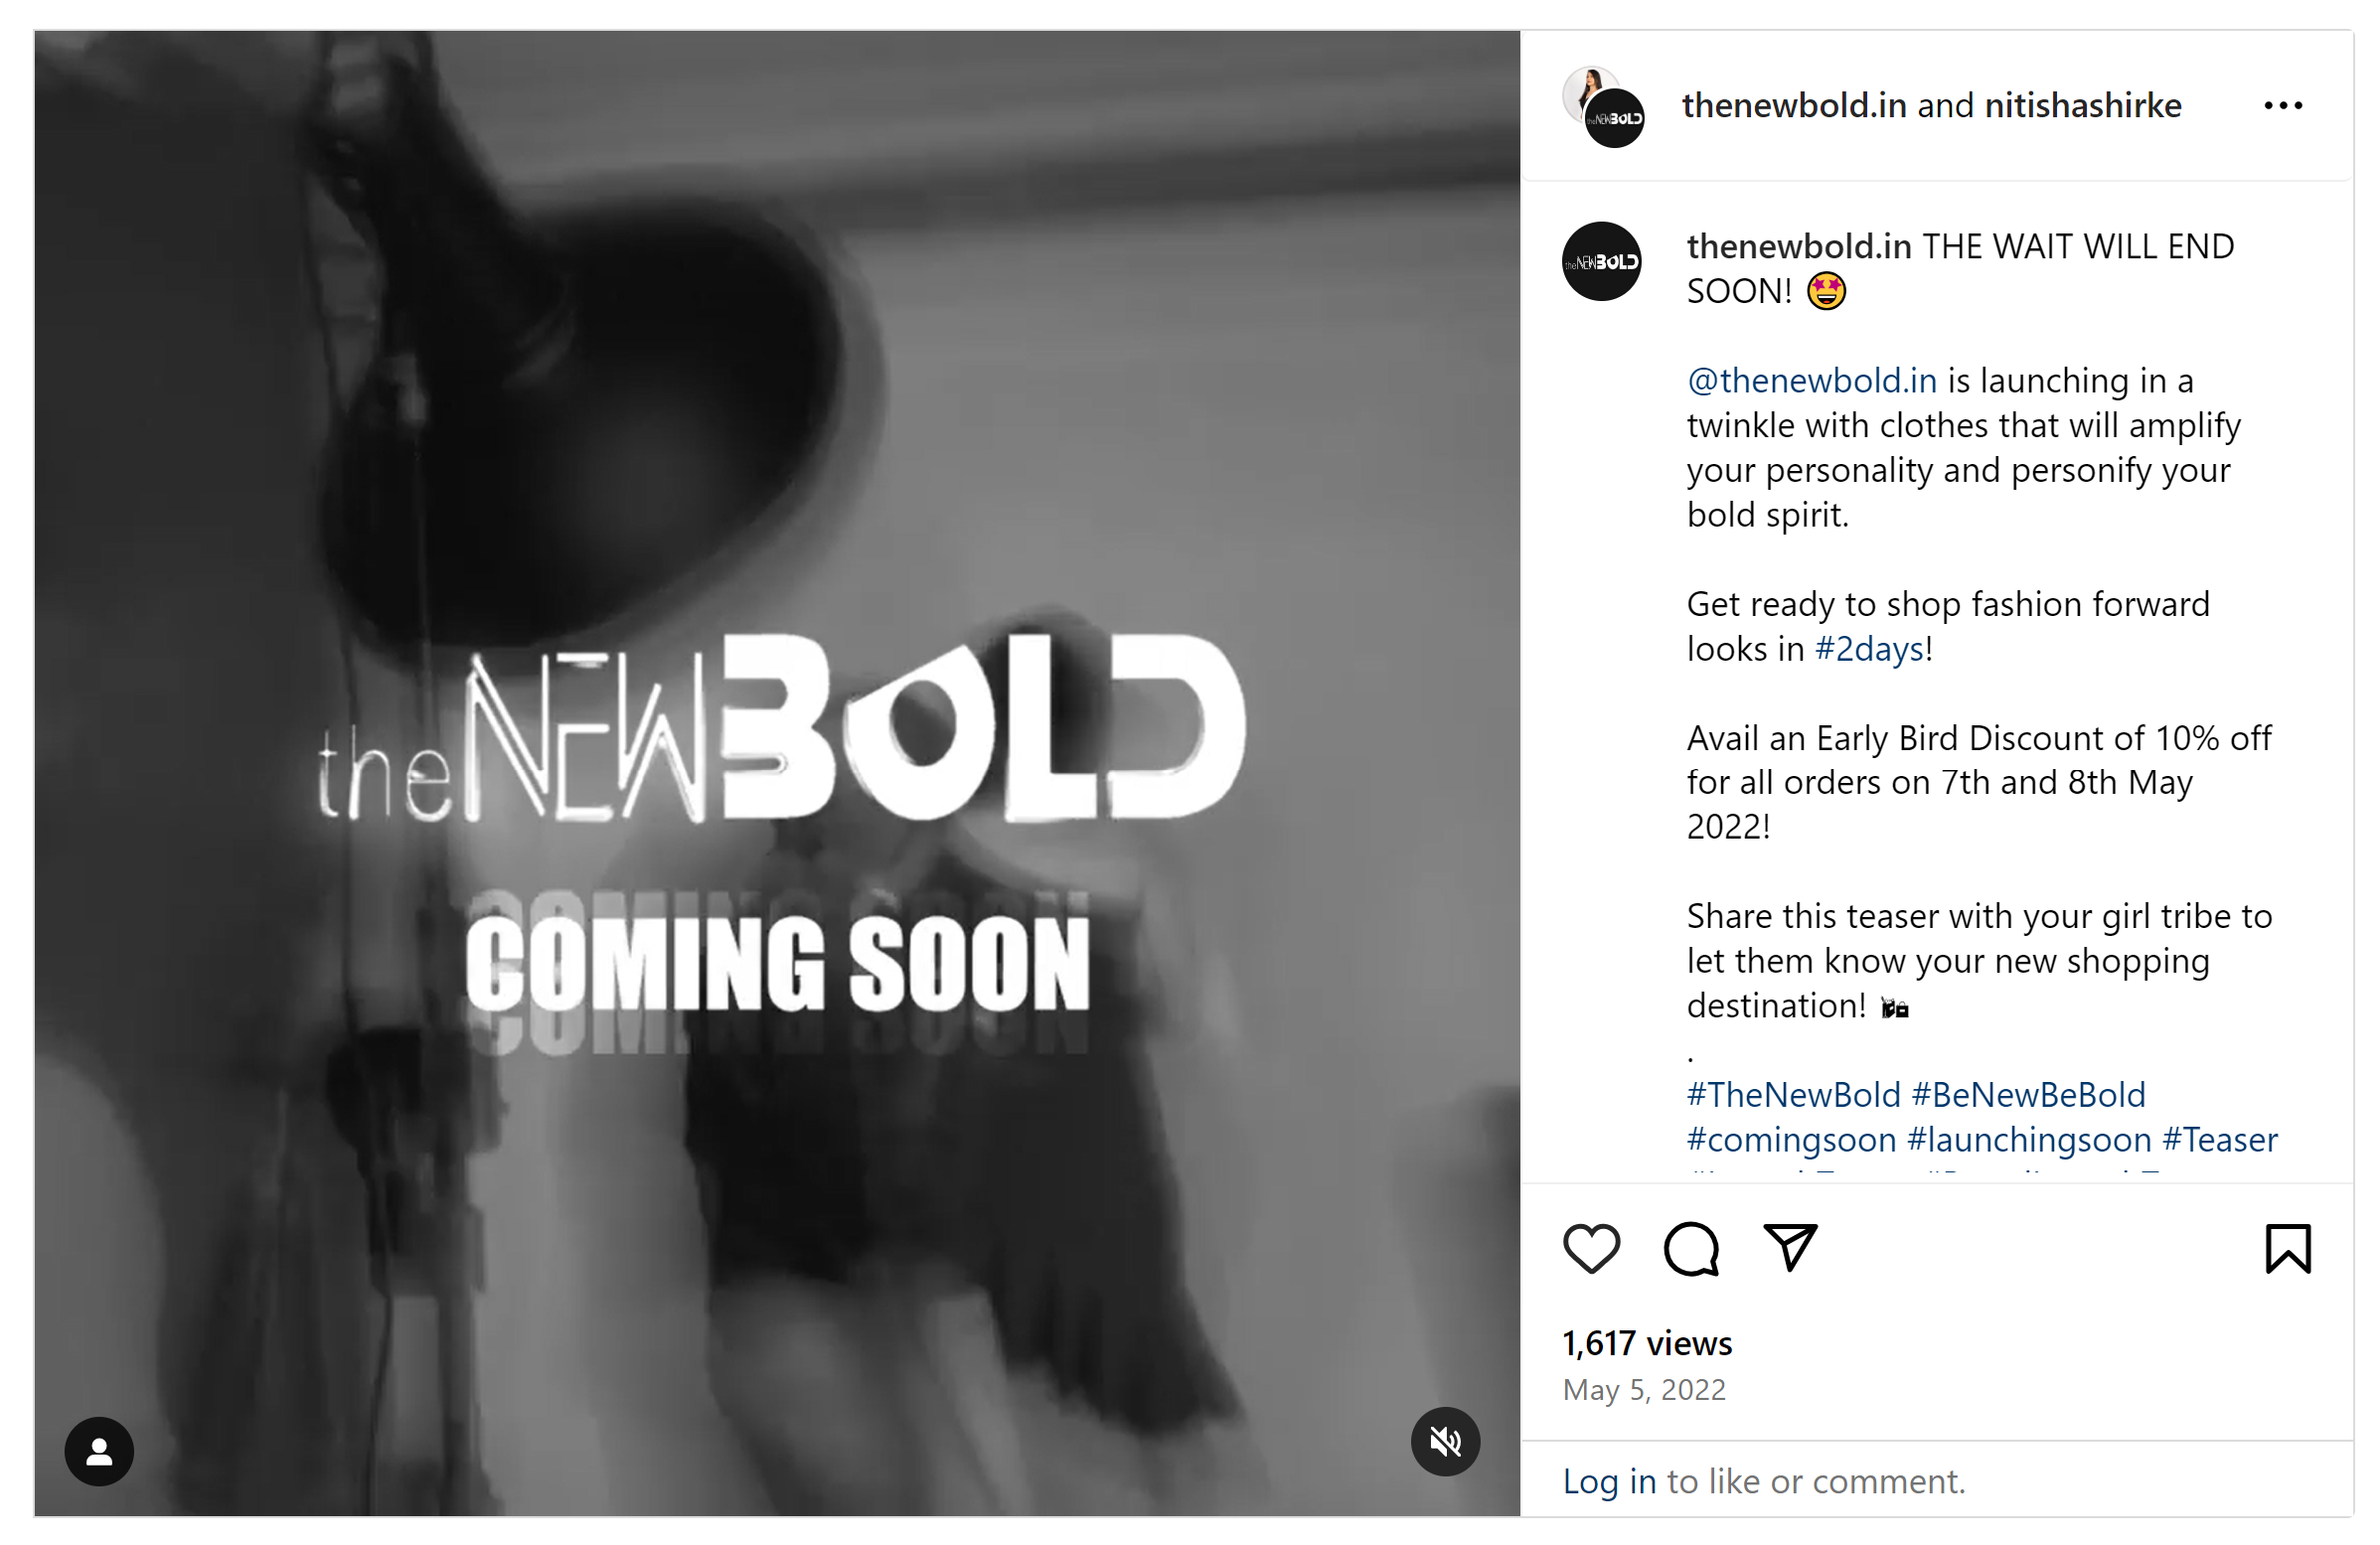 Postagem de anúncio de lançamento de produto no Instagram